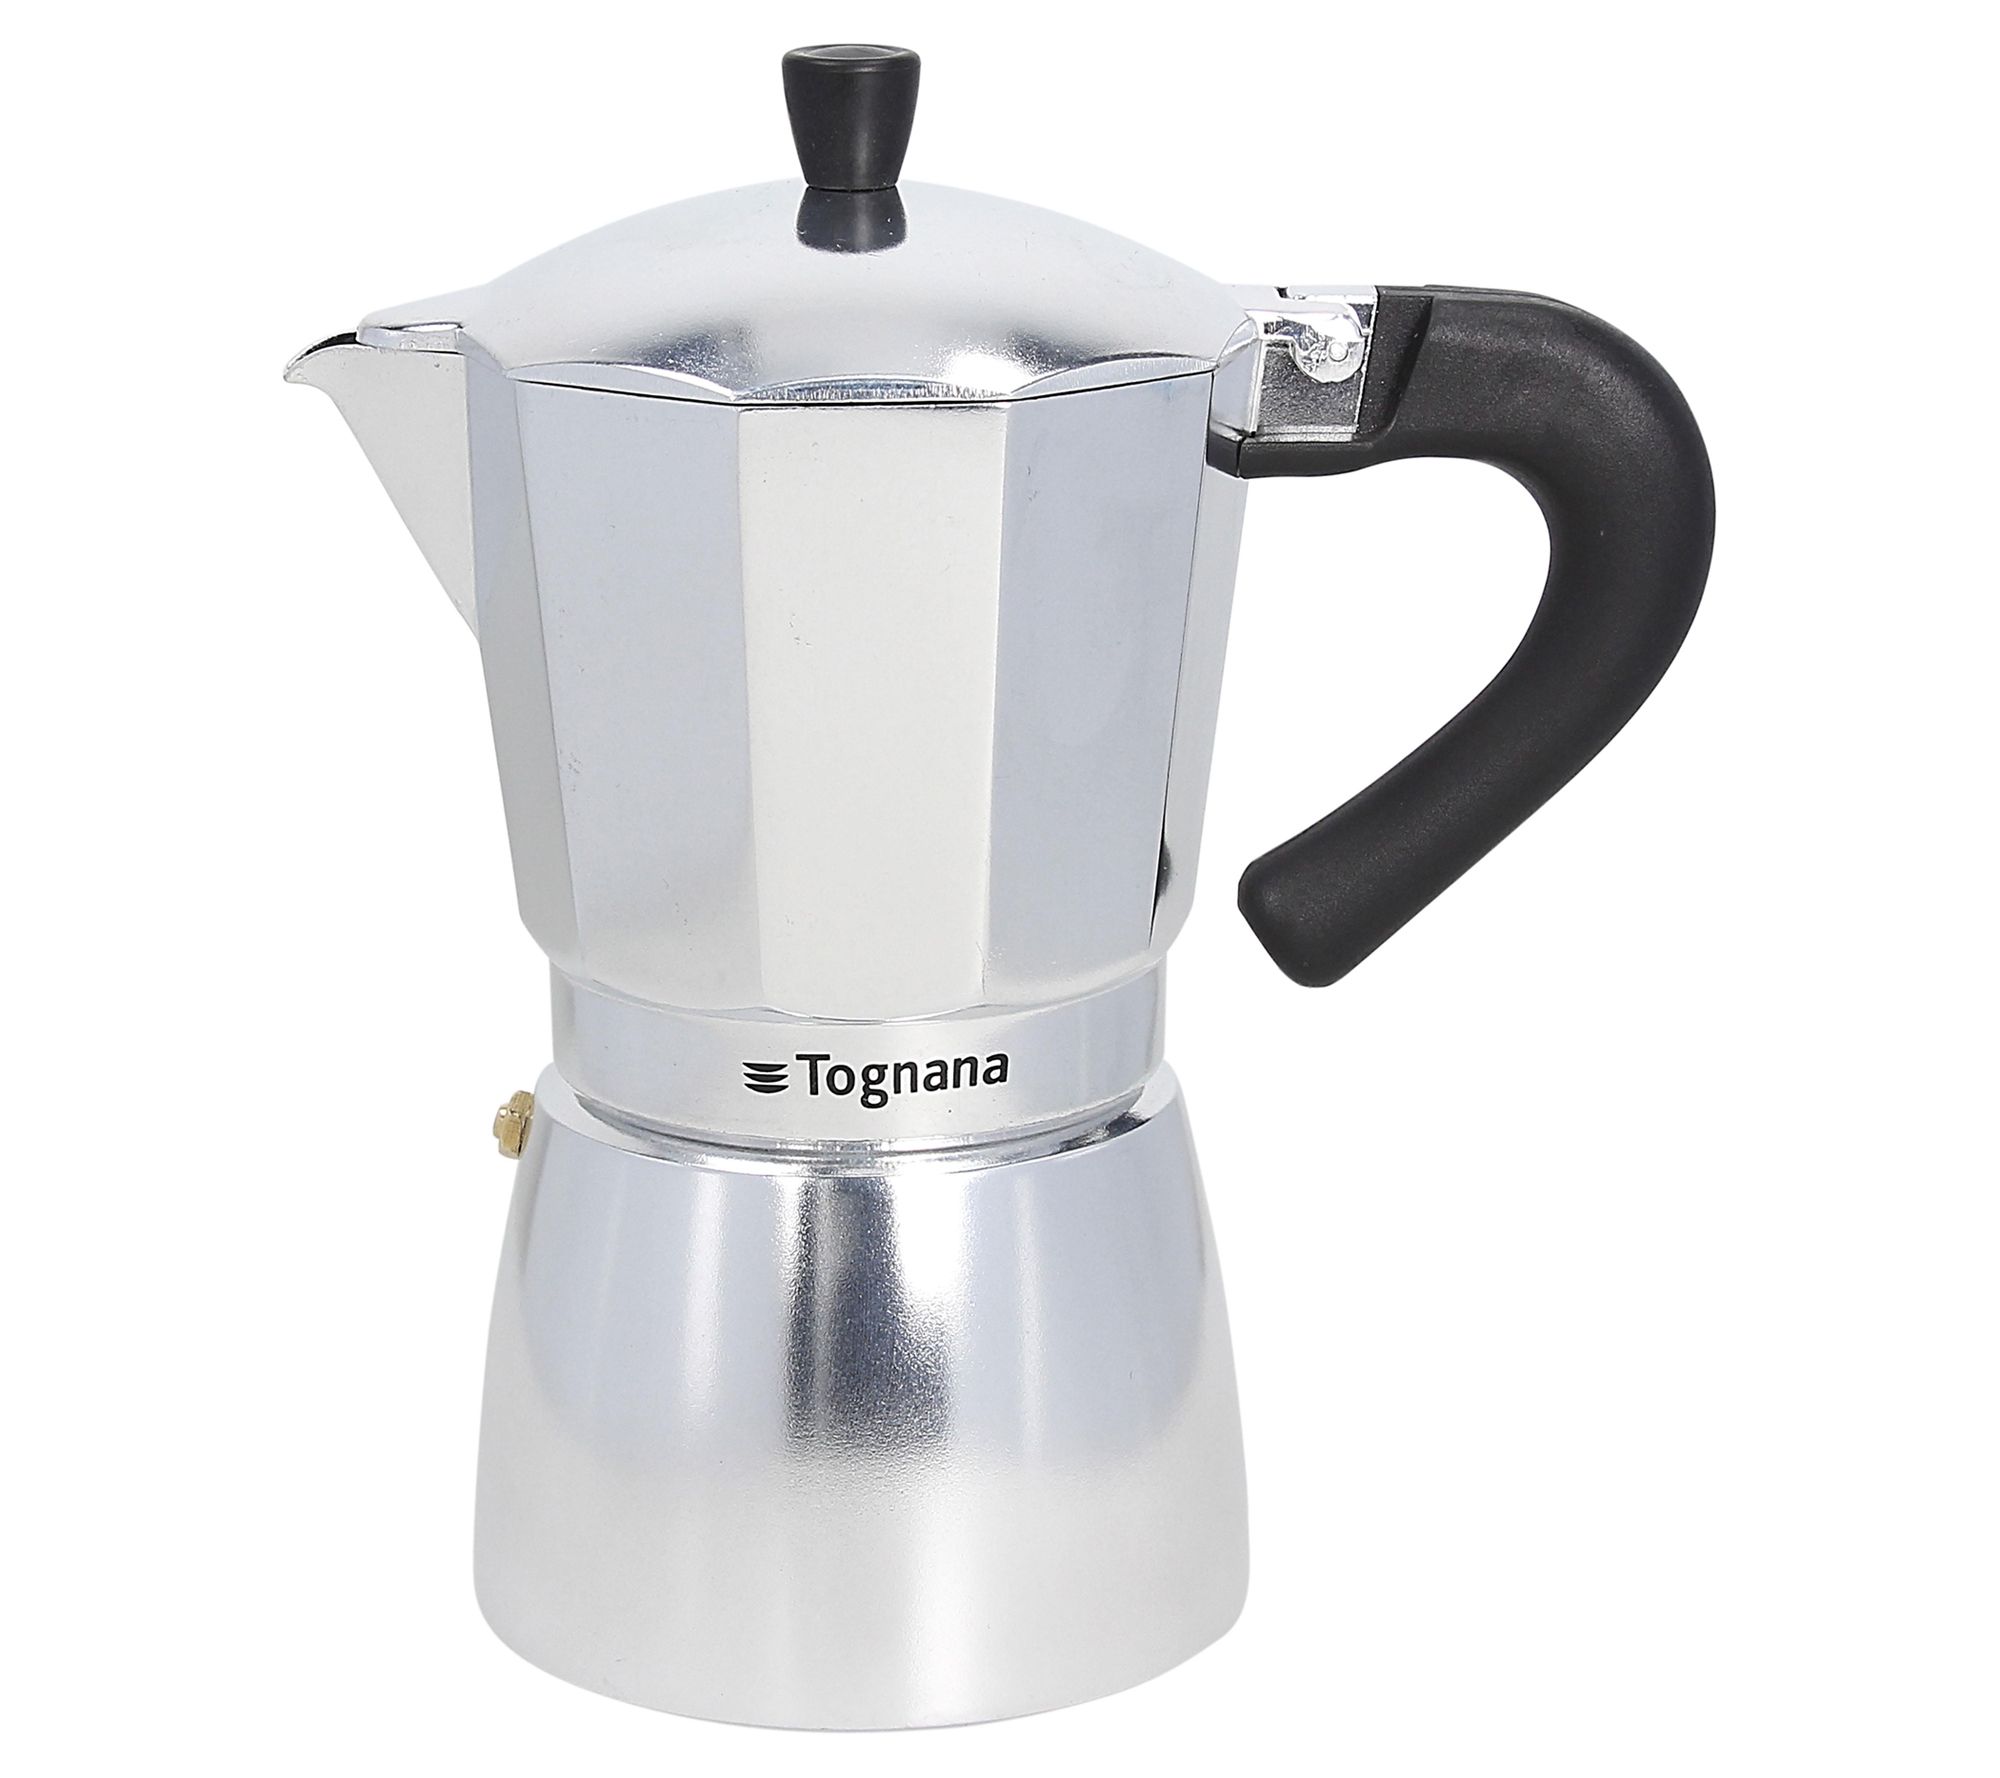 Bene Casa Portable Espresso Coffee Maker, 3 Cup, White